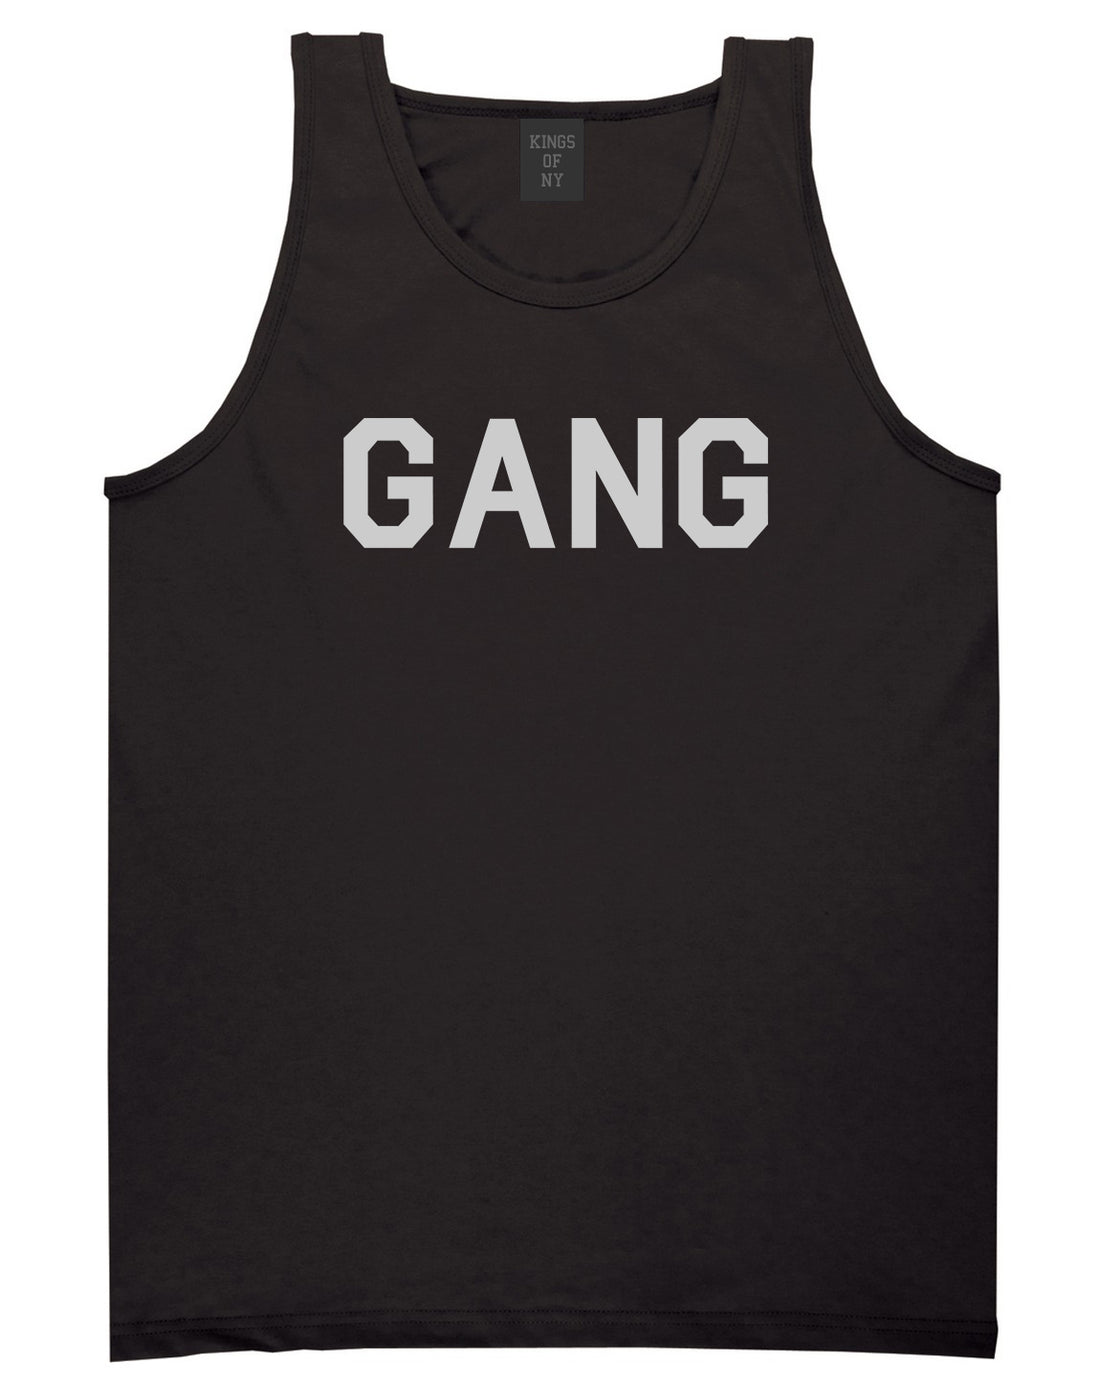 Gang Squad Mens Black Tank Top Shirt by KINGS OF NY